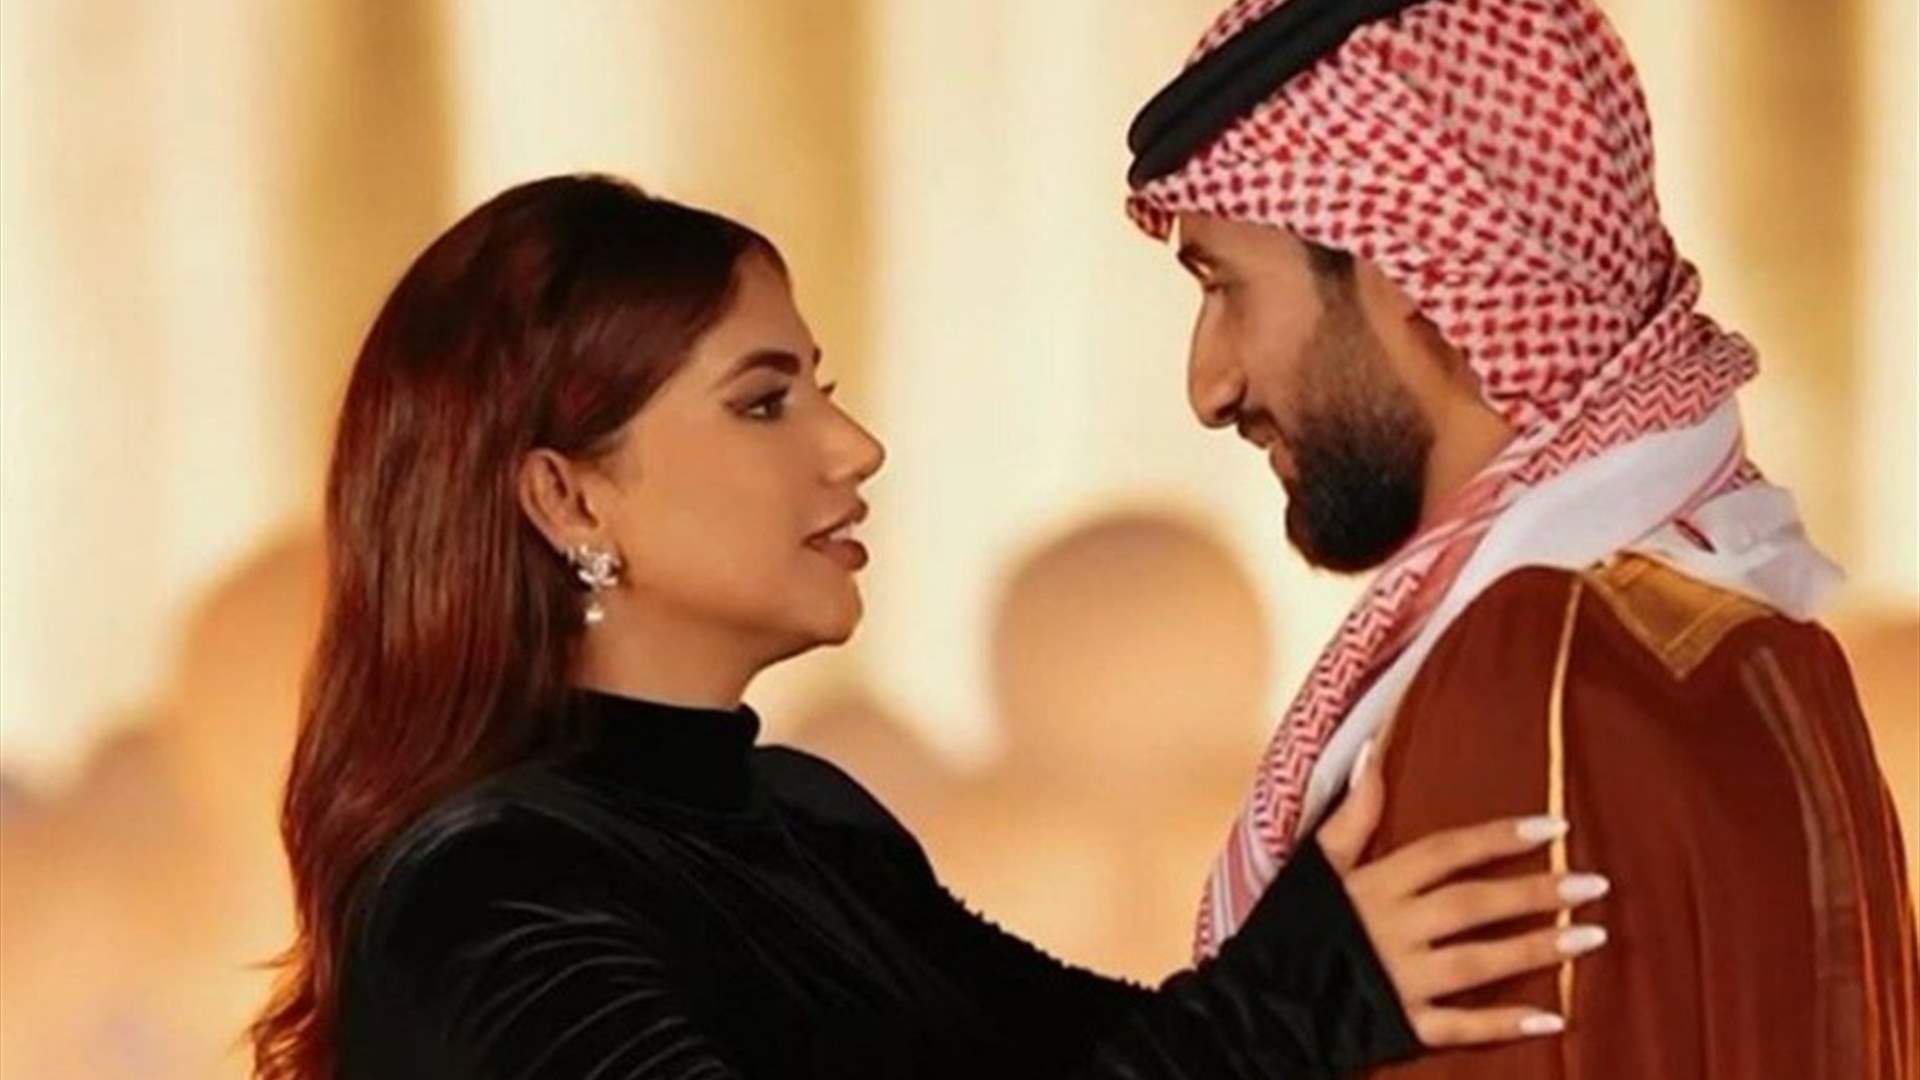 مؤثرة عراقية شهيرة تتلقى هدية من خطيبها باهظة الثمن... فستان من الذهب! (فيديو)